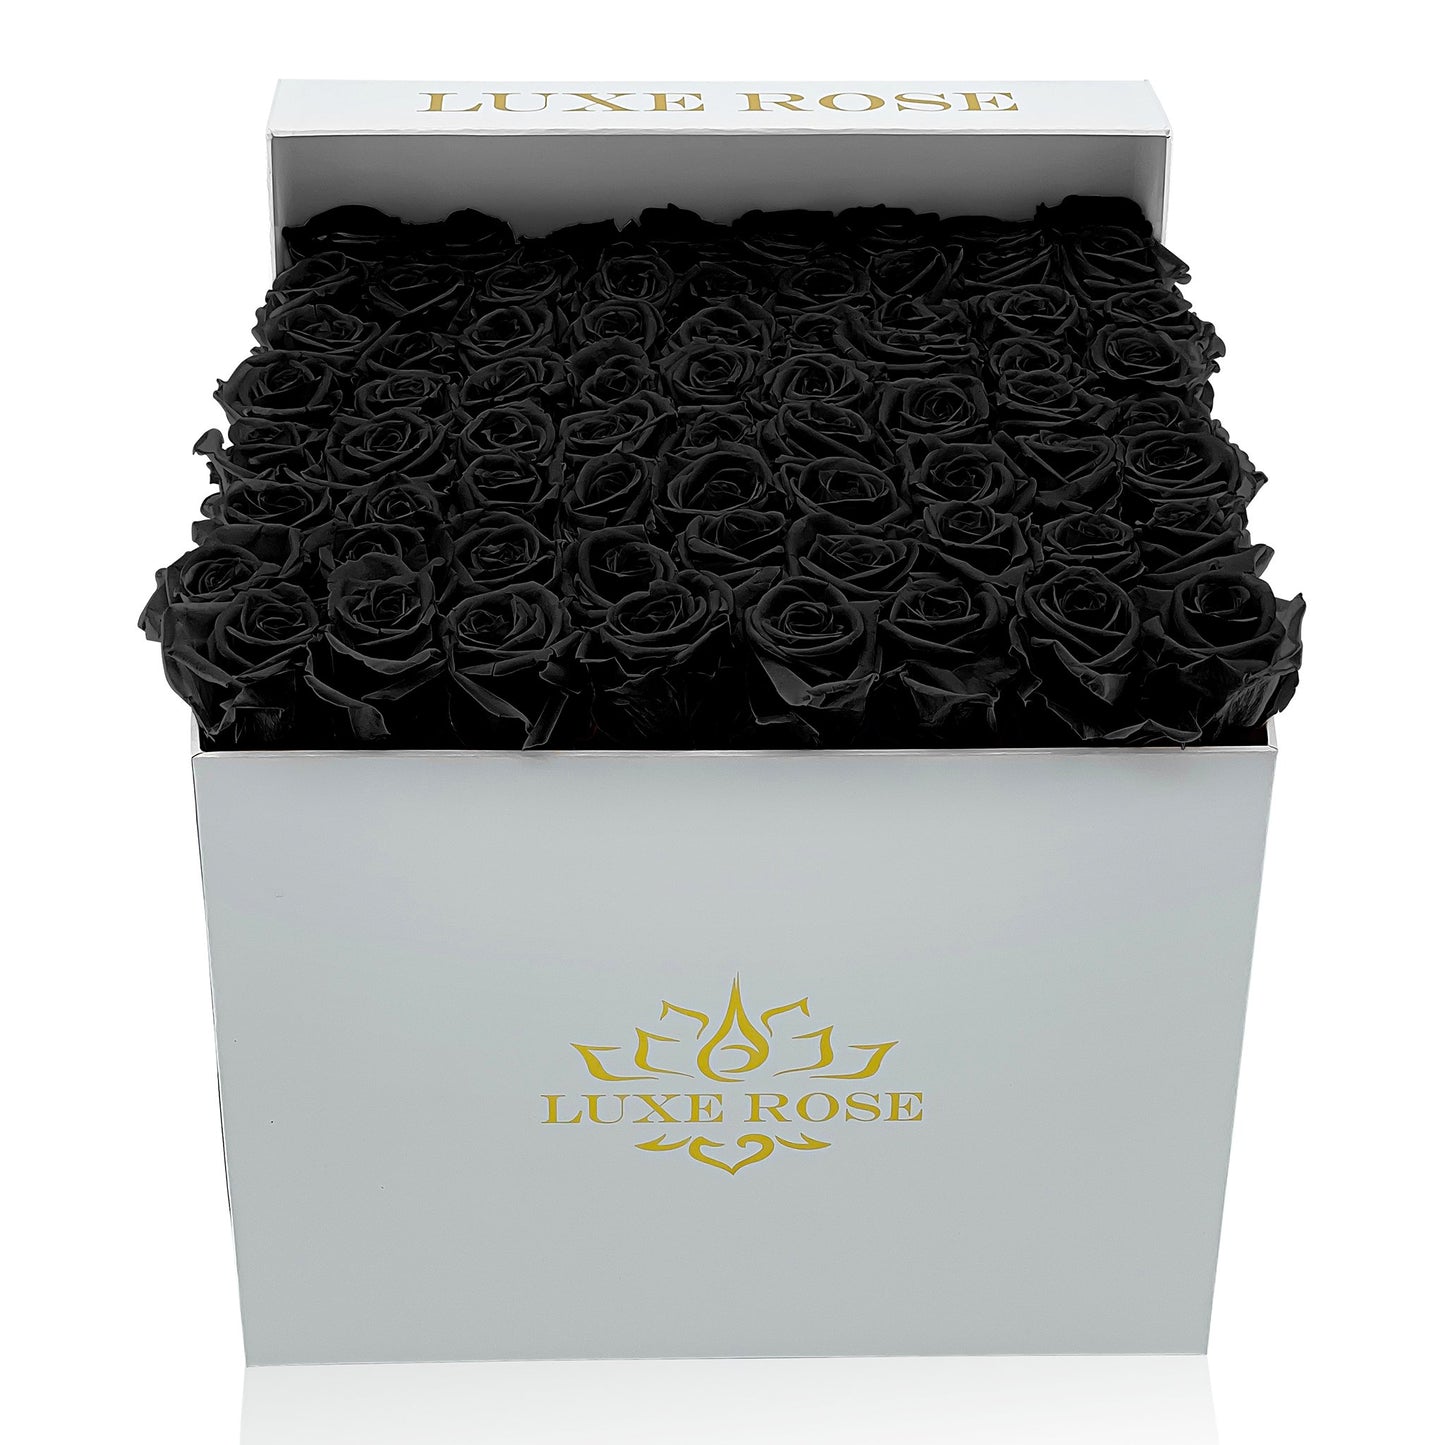 Preserved Roses Large Box | Black - White - Roses